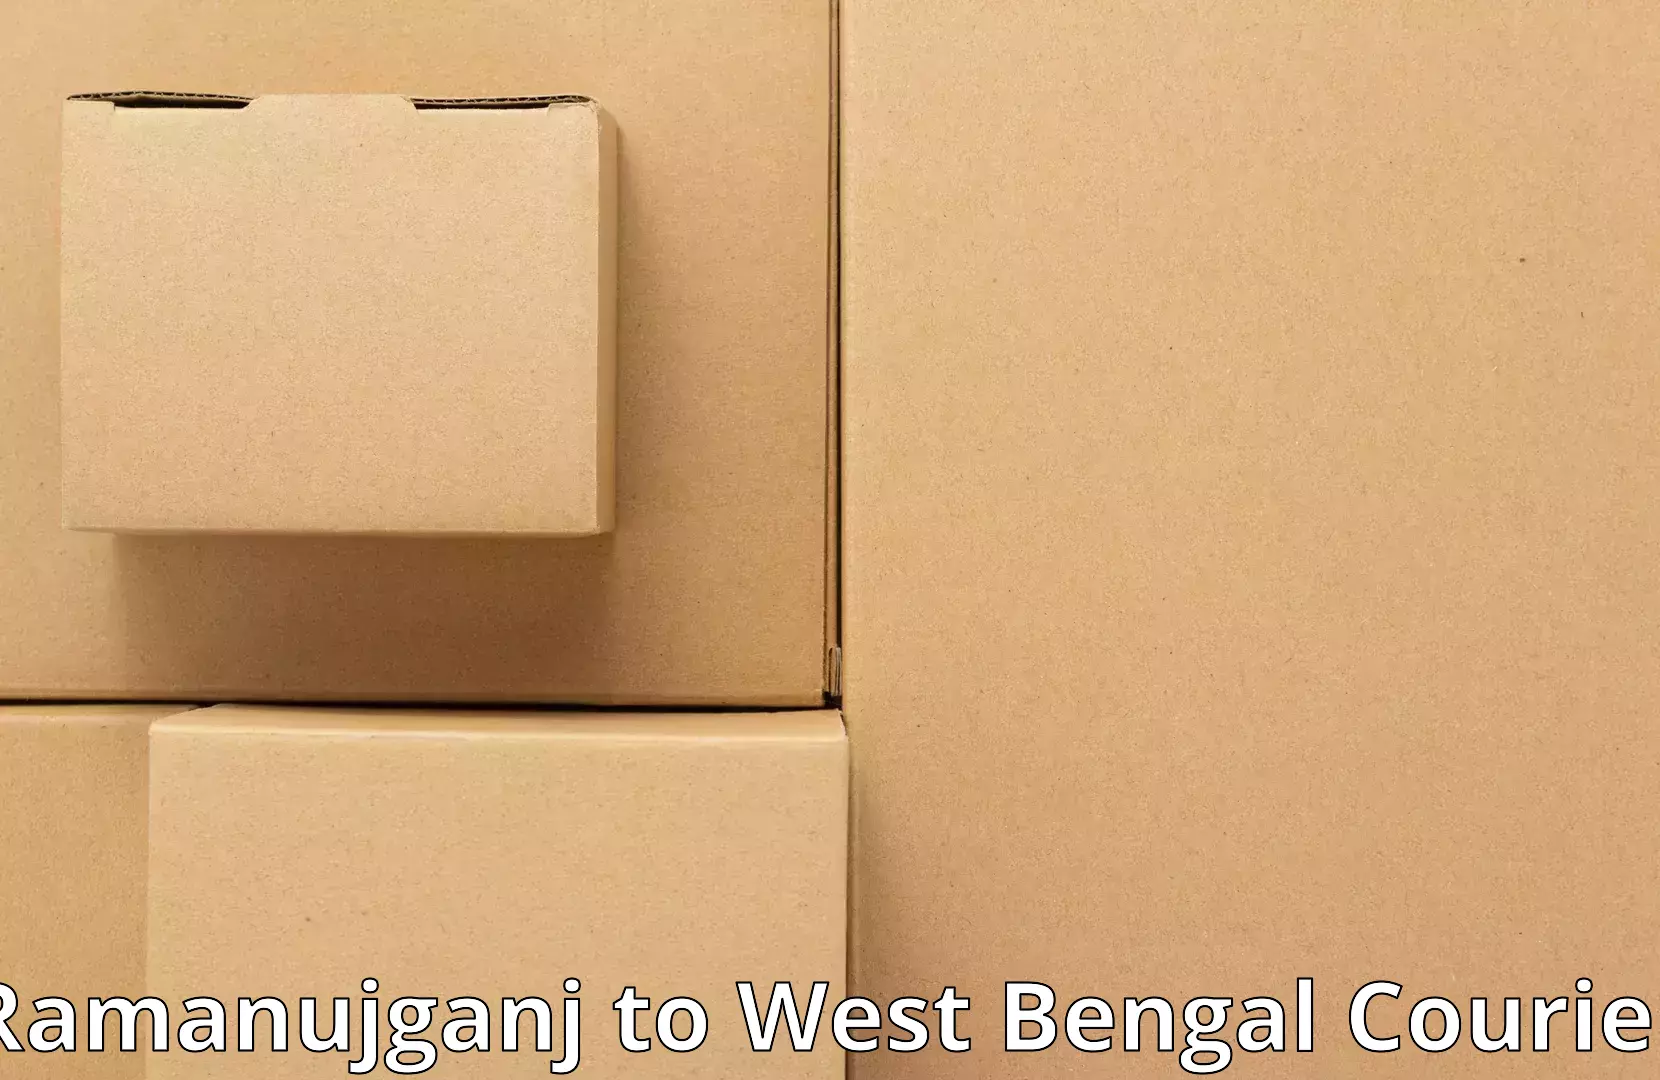 Furniture moving assistance in Ramanujganj to Bandel